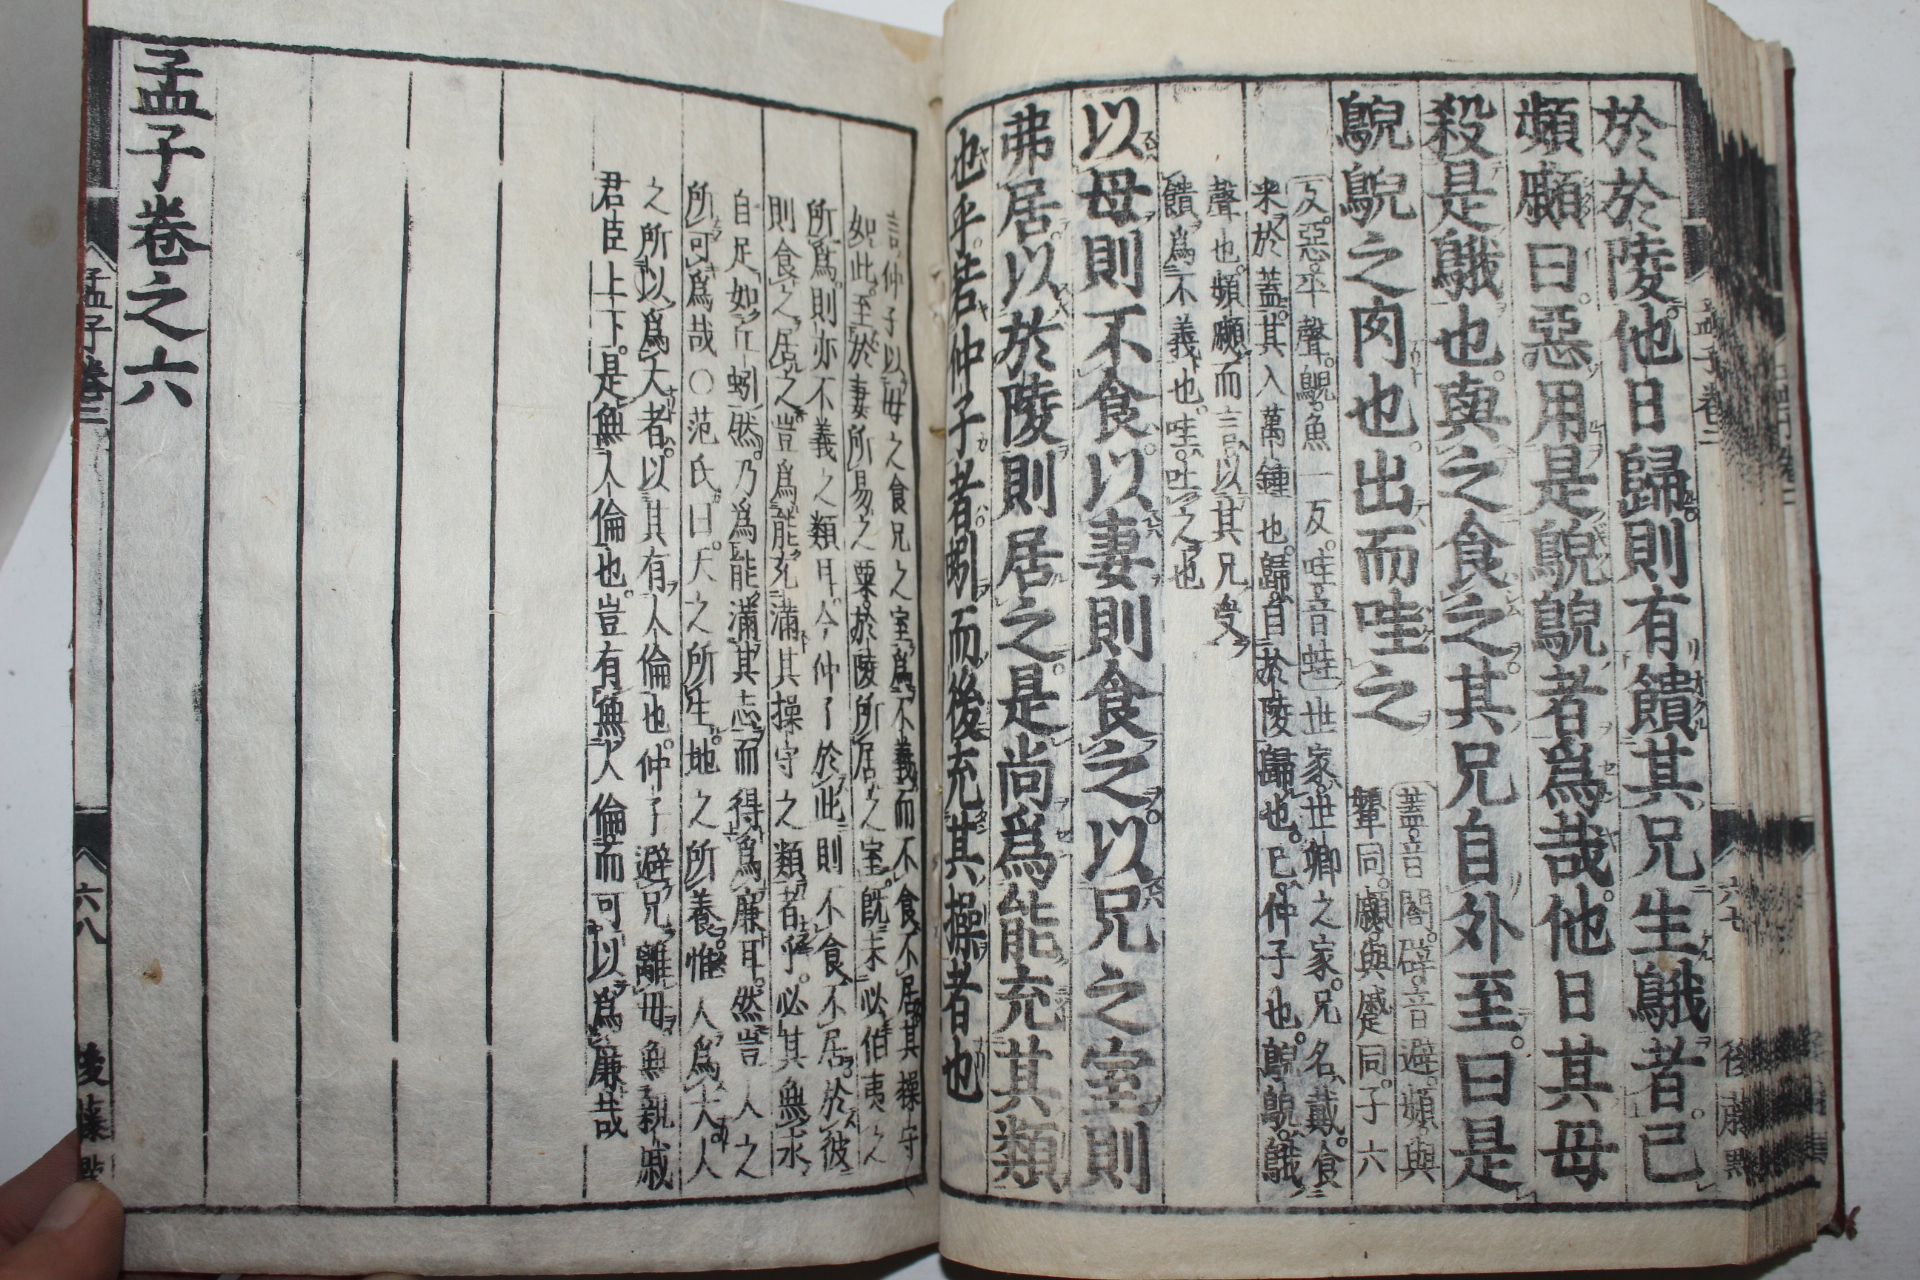 에도시기 일본목판본 맹자(孟子) 3책